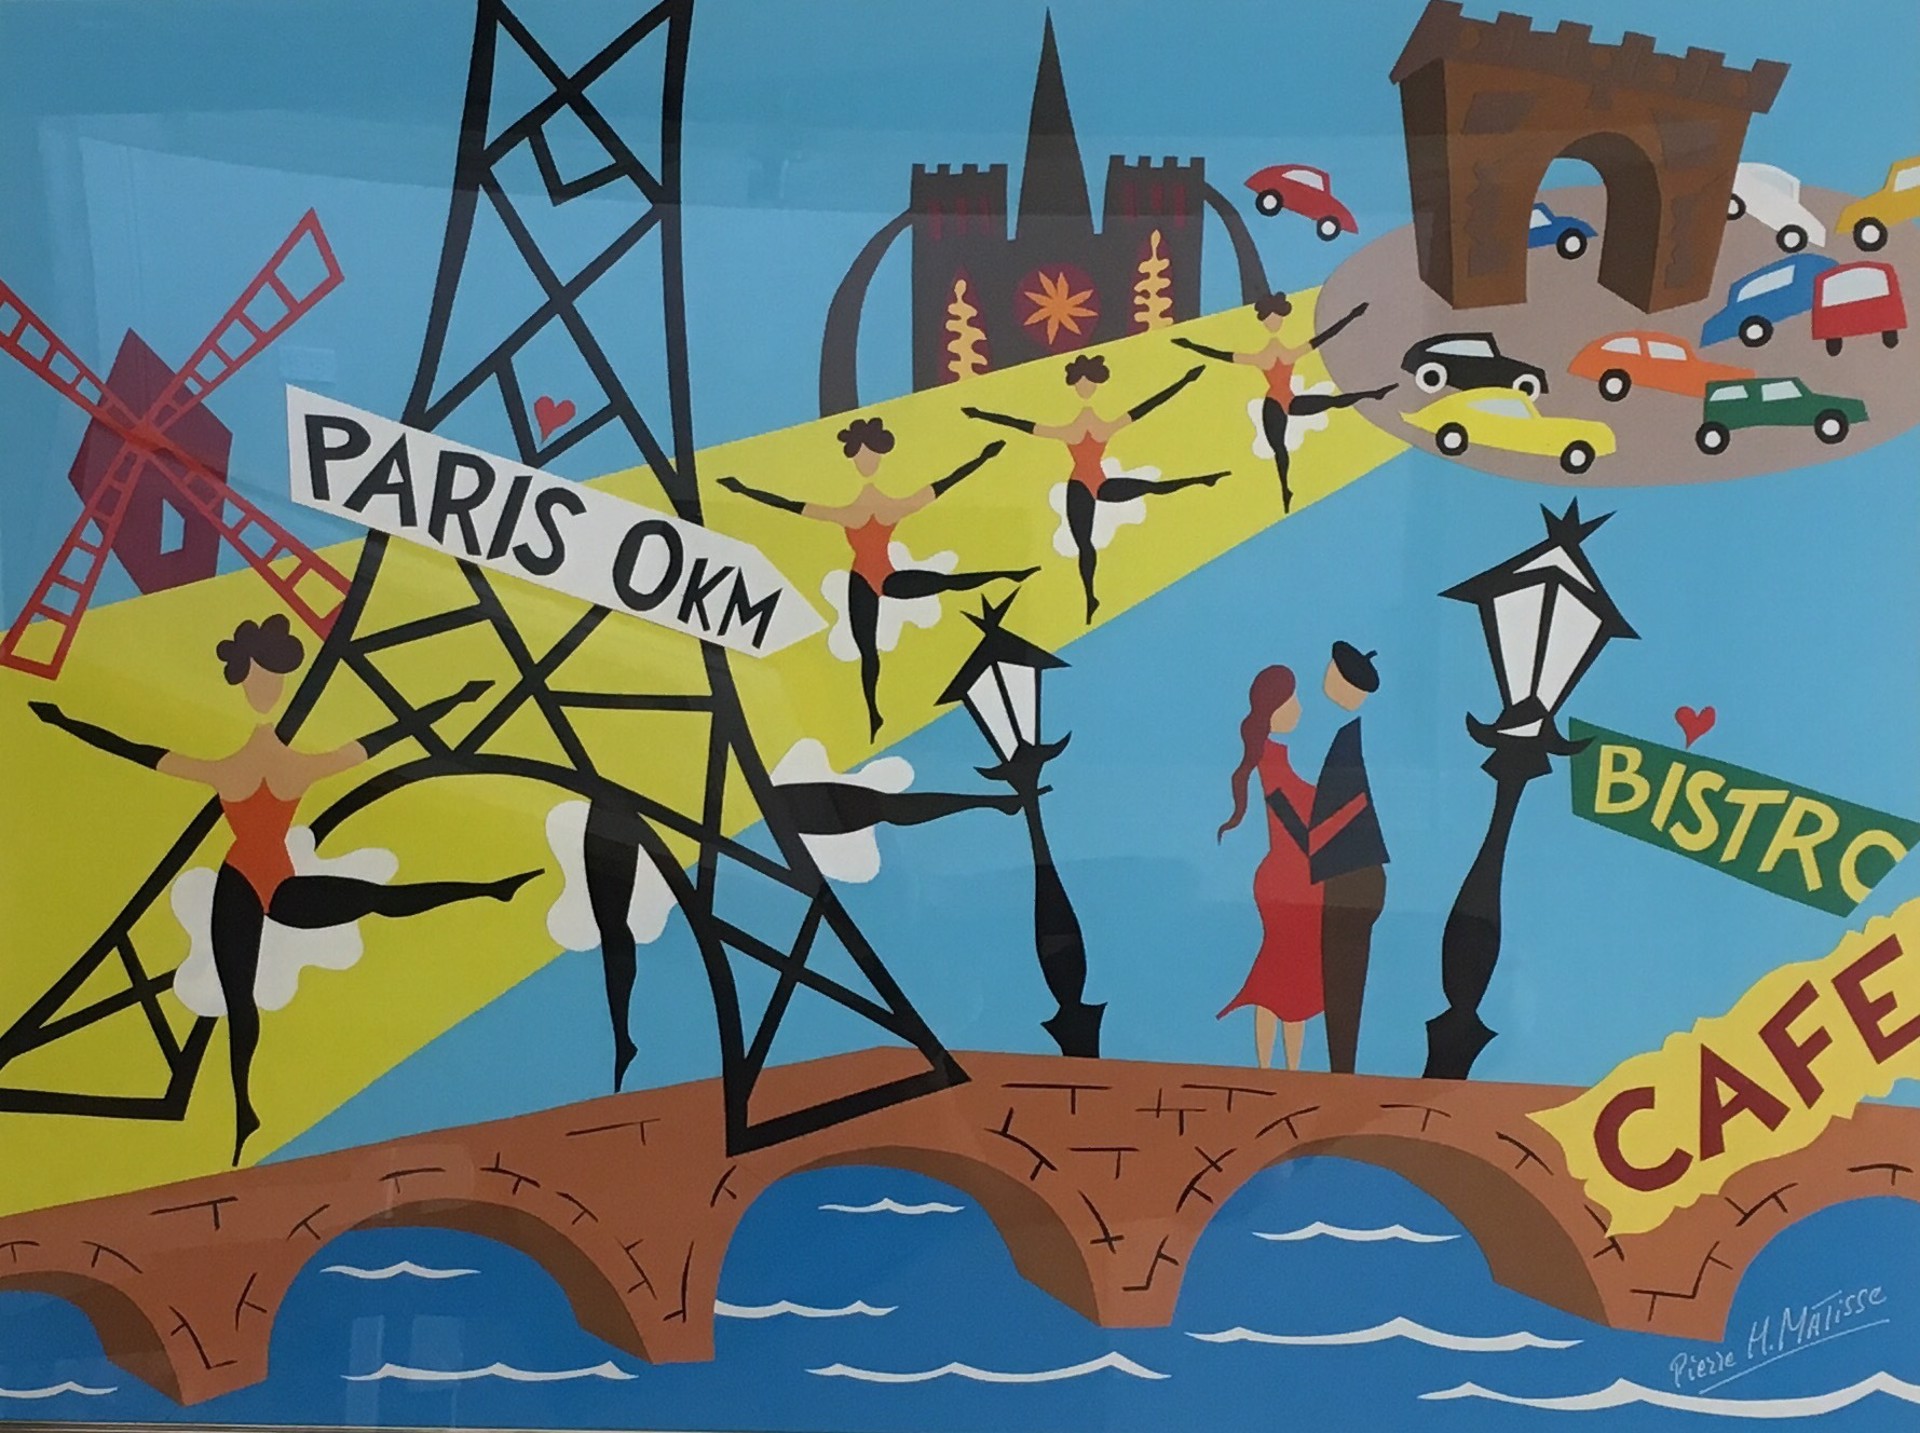 Paris 0KM by Pierre Matisse